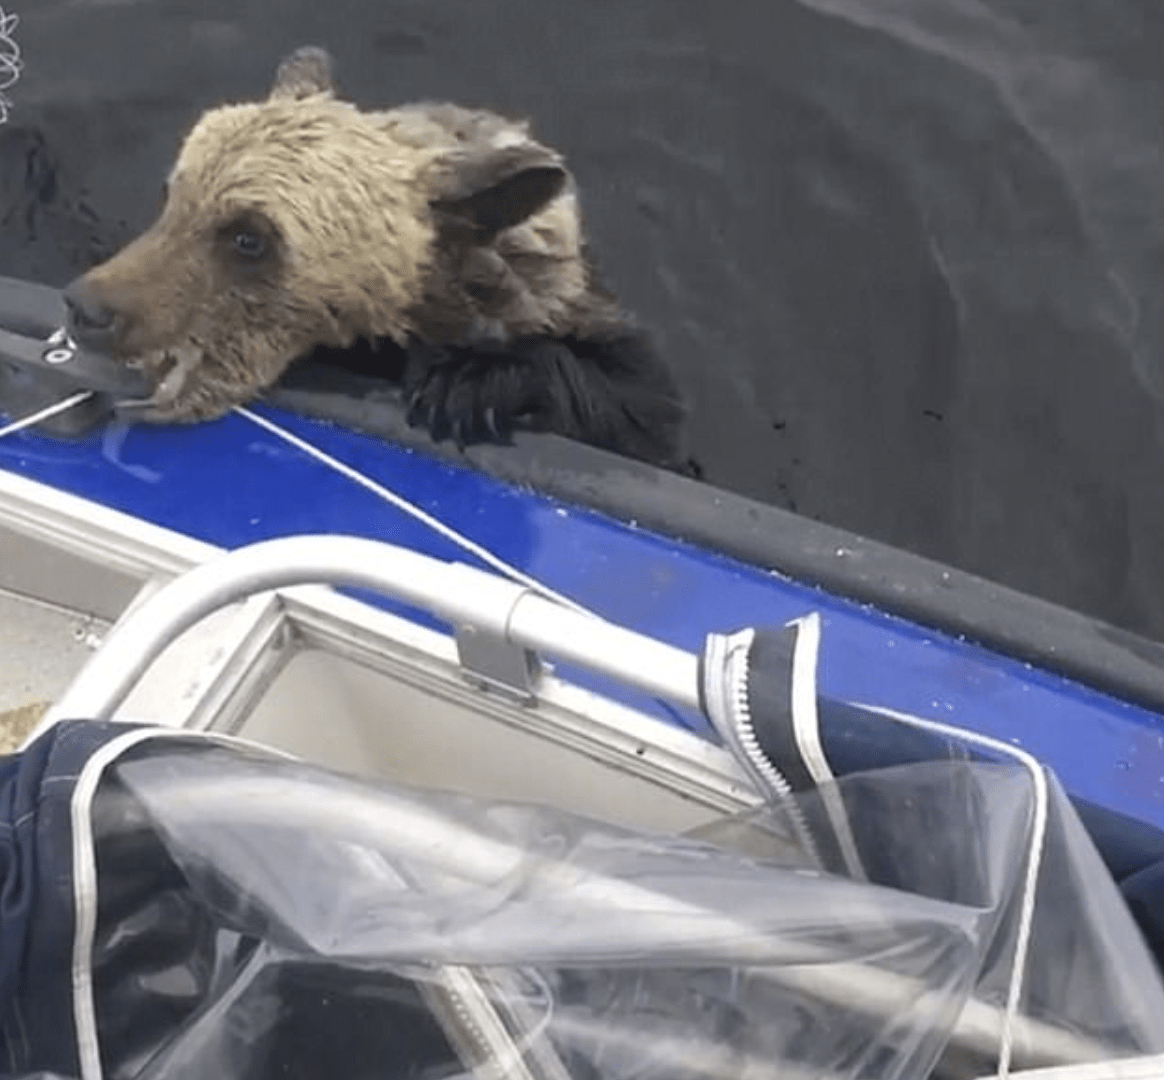 Ahogando las patas de un oso bebé en un bote para darse un empujón, muerde mientras los hombres no se mueven